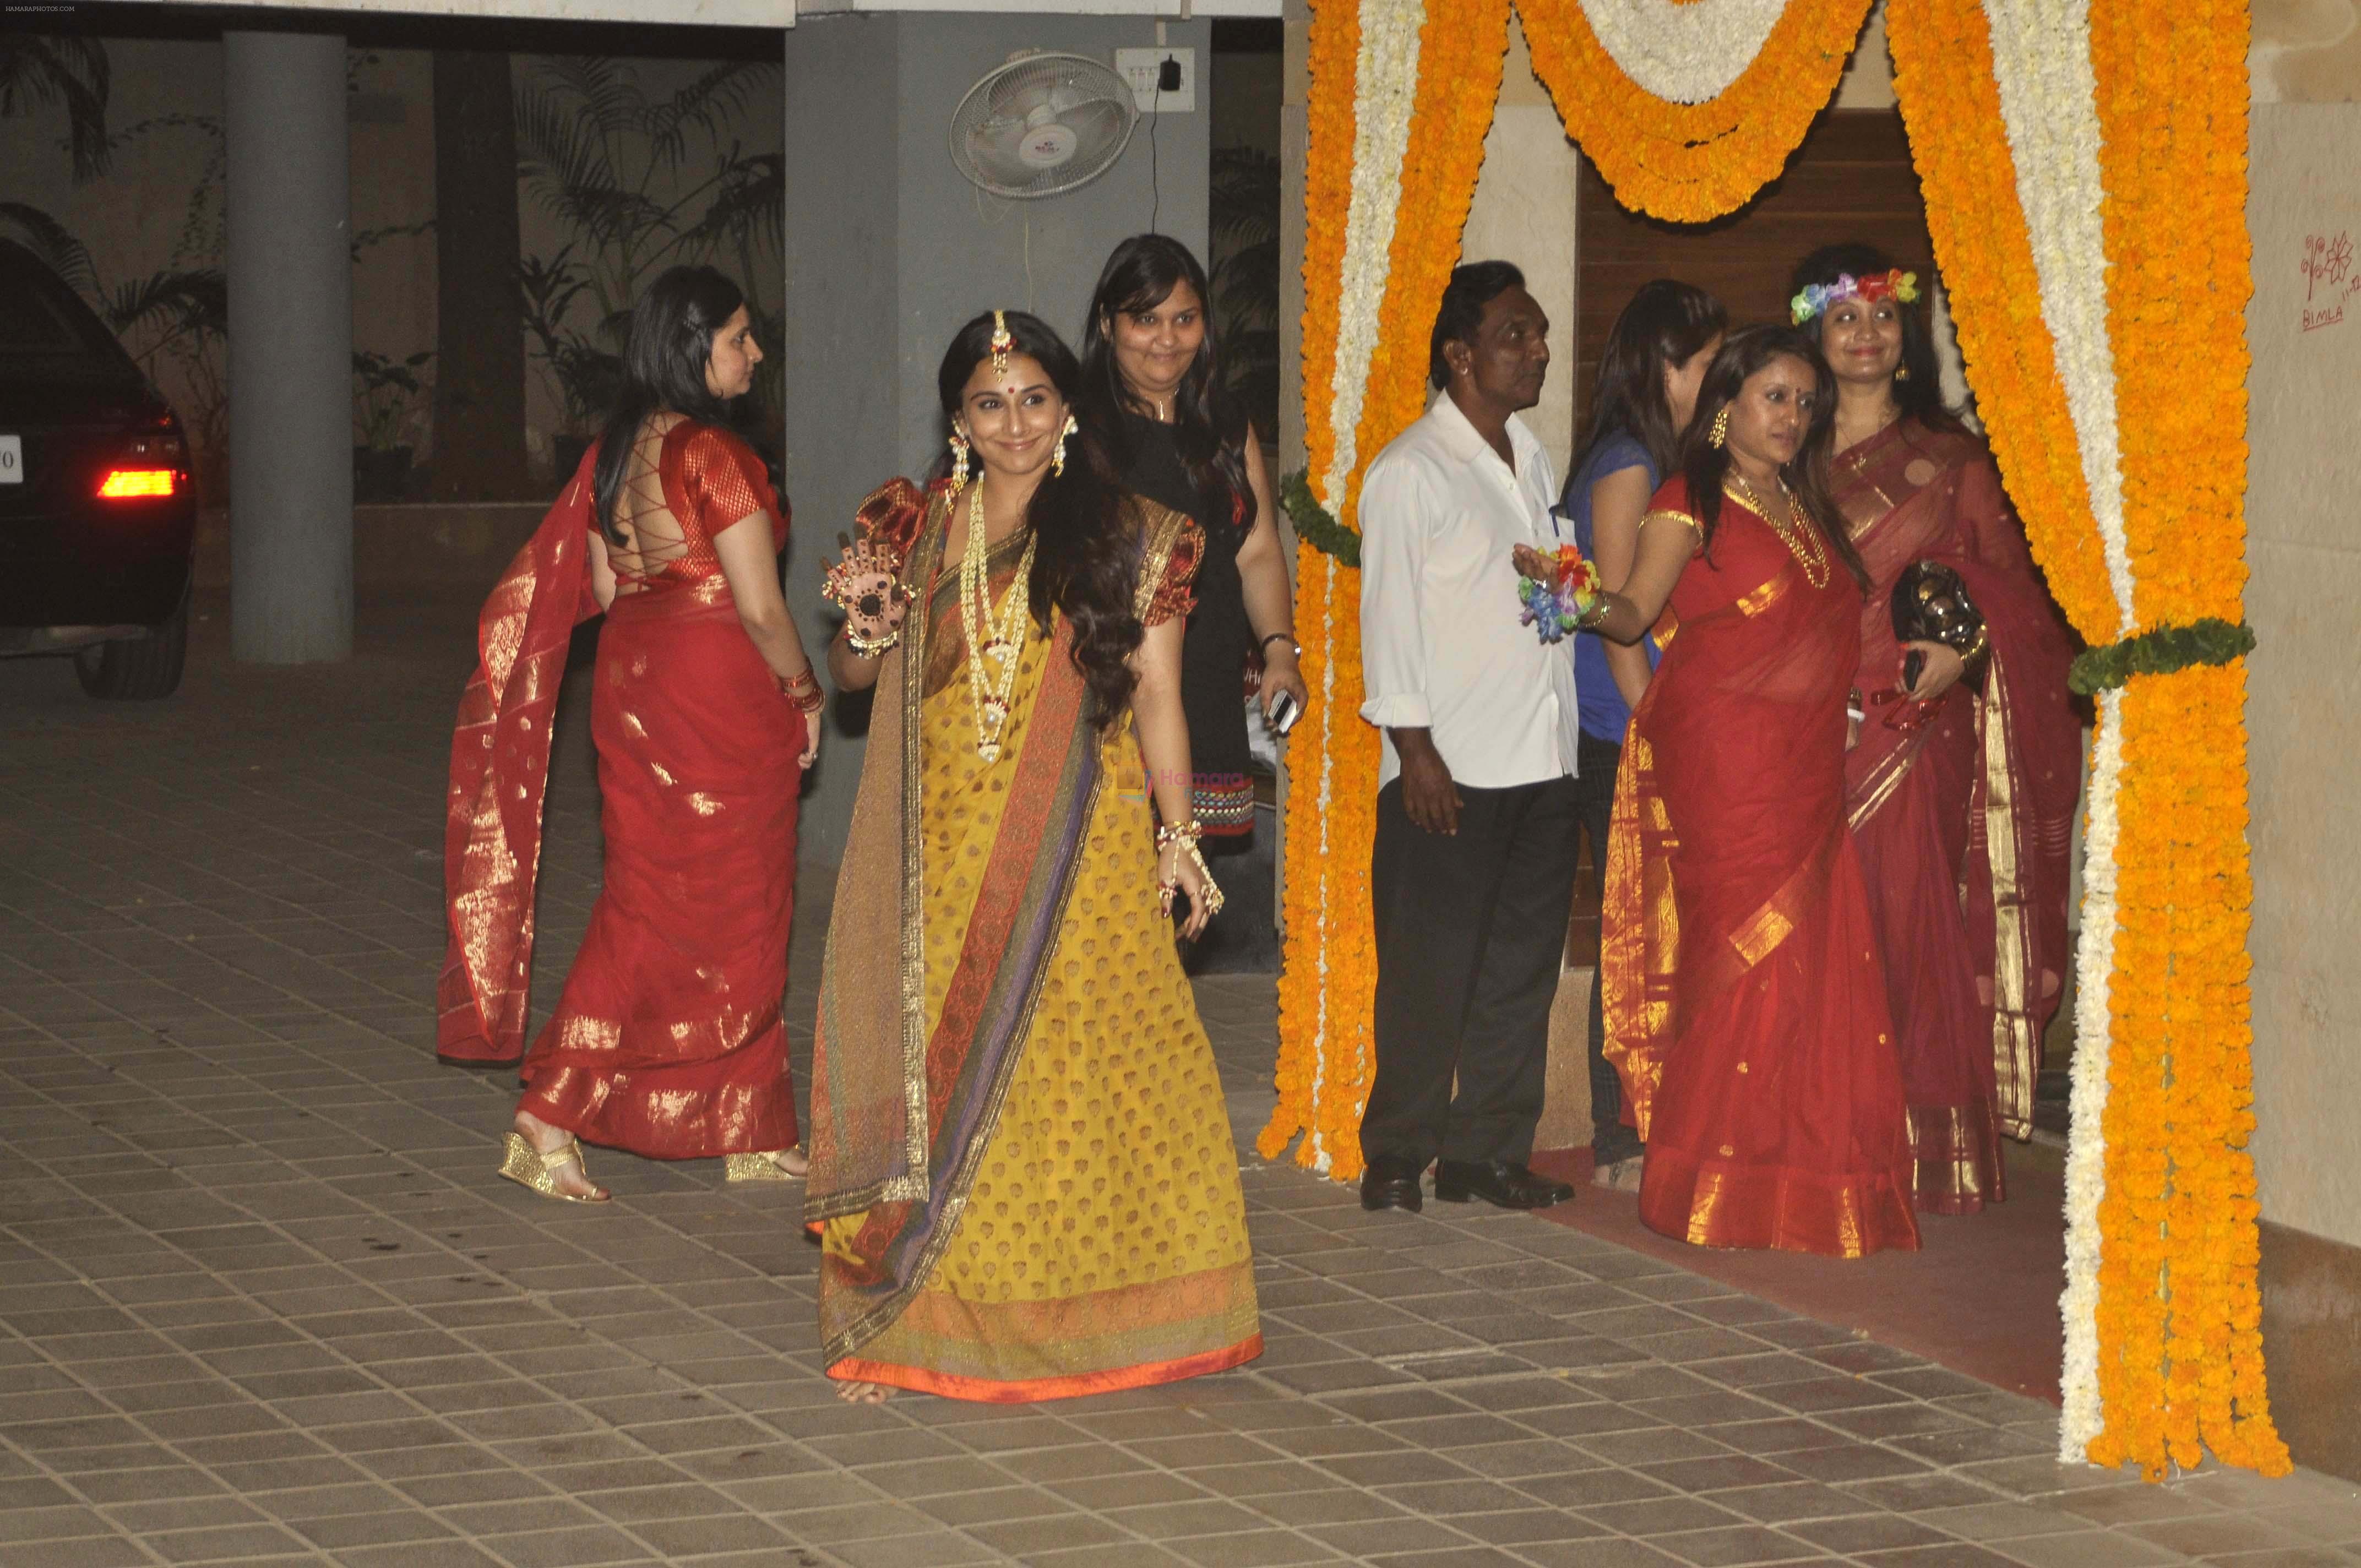 Vidya Balan's Mehndi ceremony in Mumbai on 12th Dec 2012